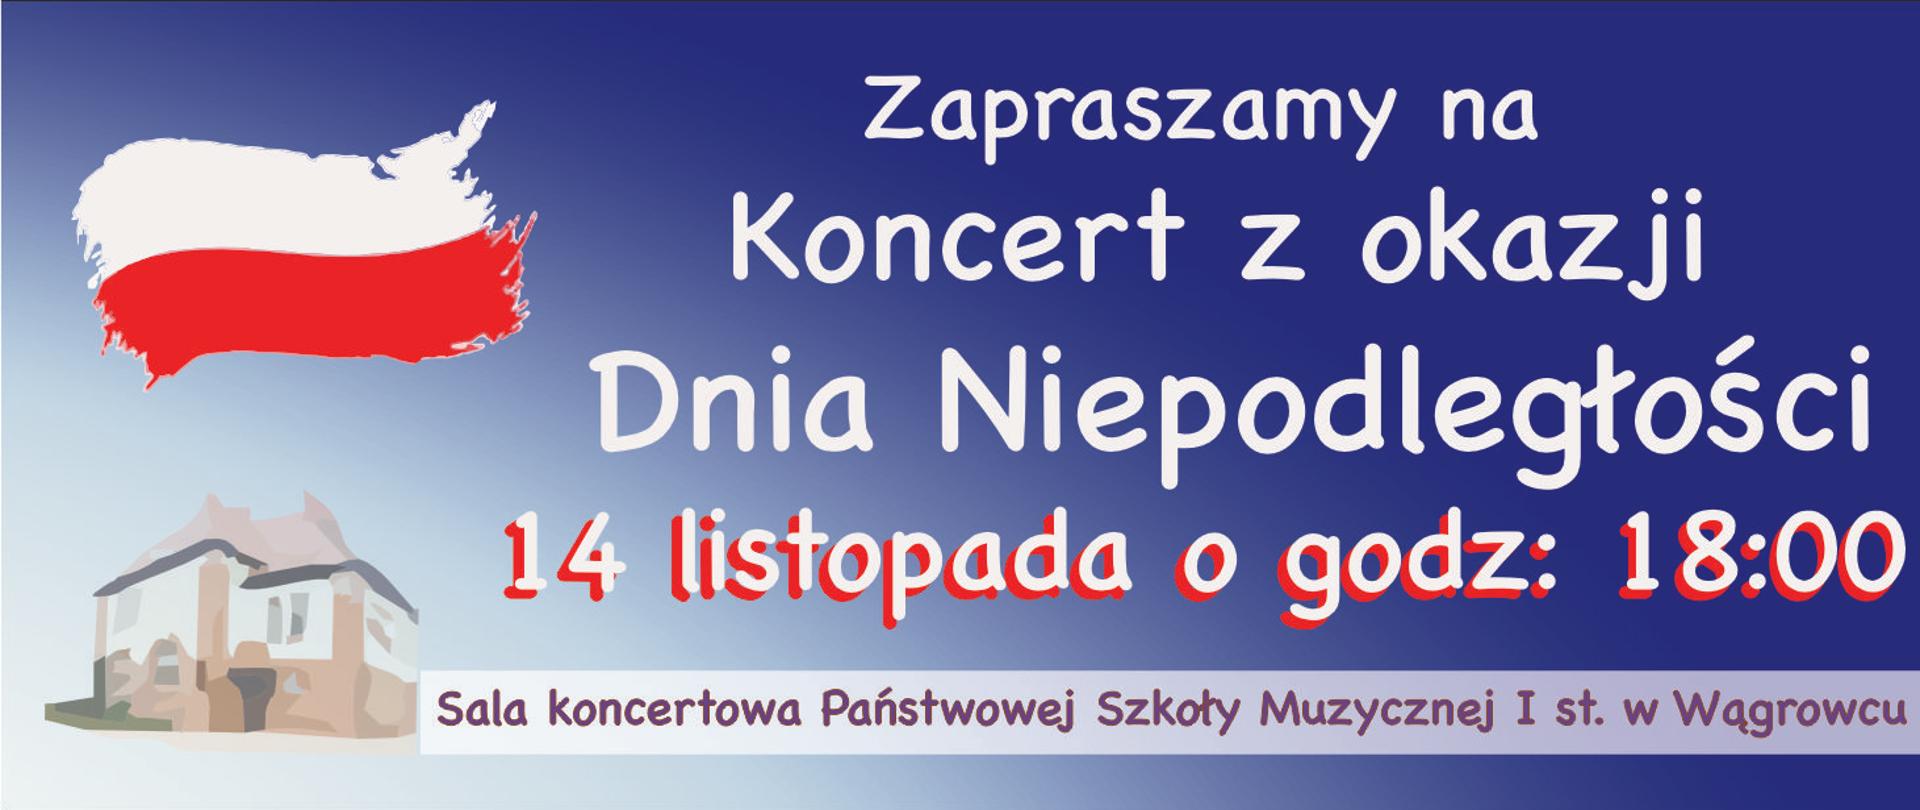 Na banerze znajdują się informacje dotyczące koncert z okazji Dnia Niepodległości w dniu 14 listopada o godzinie 18:00